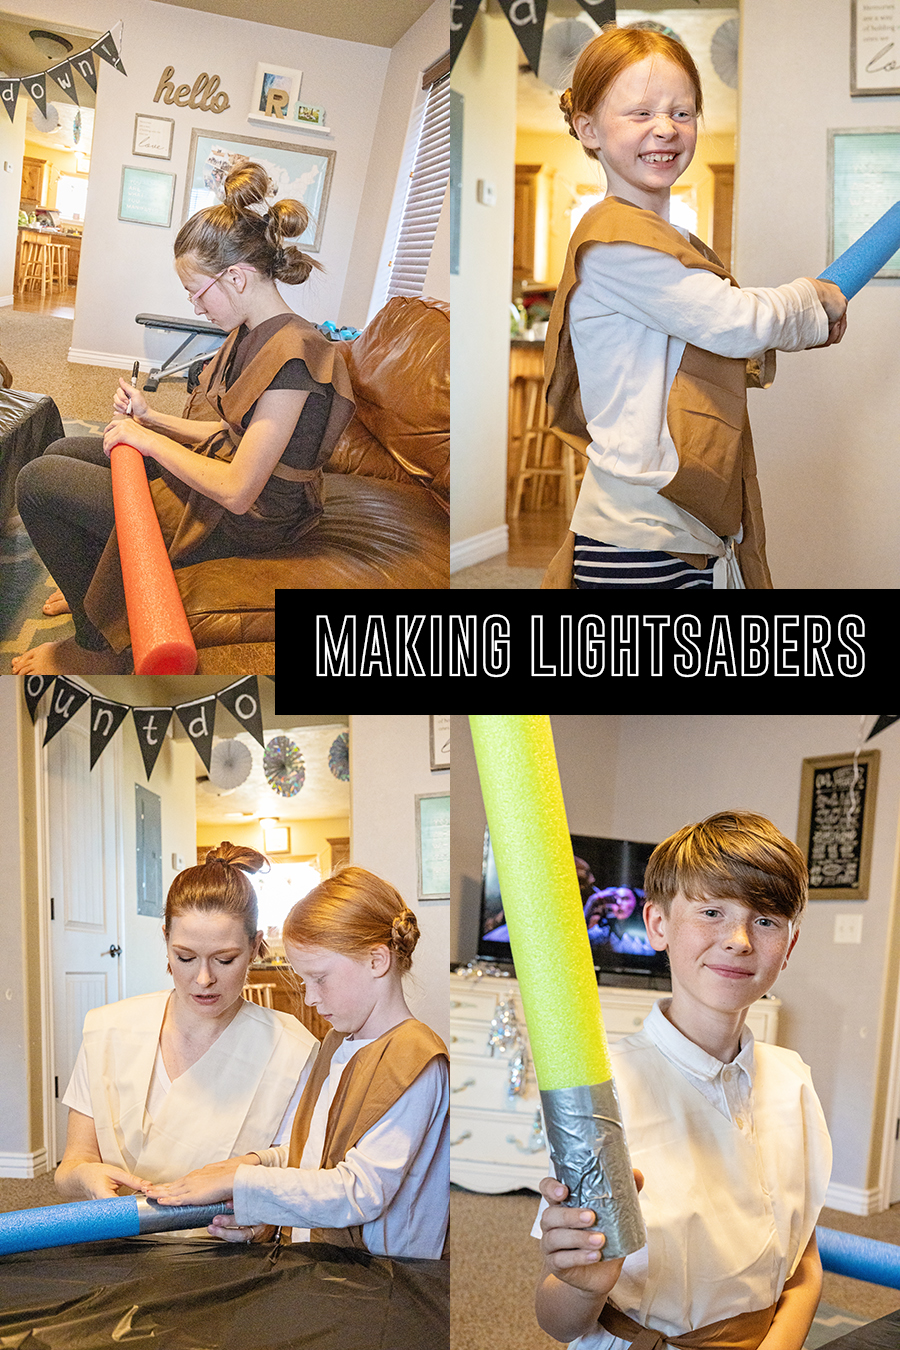 DIY star wars lightsaber